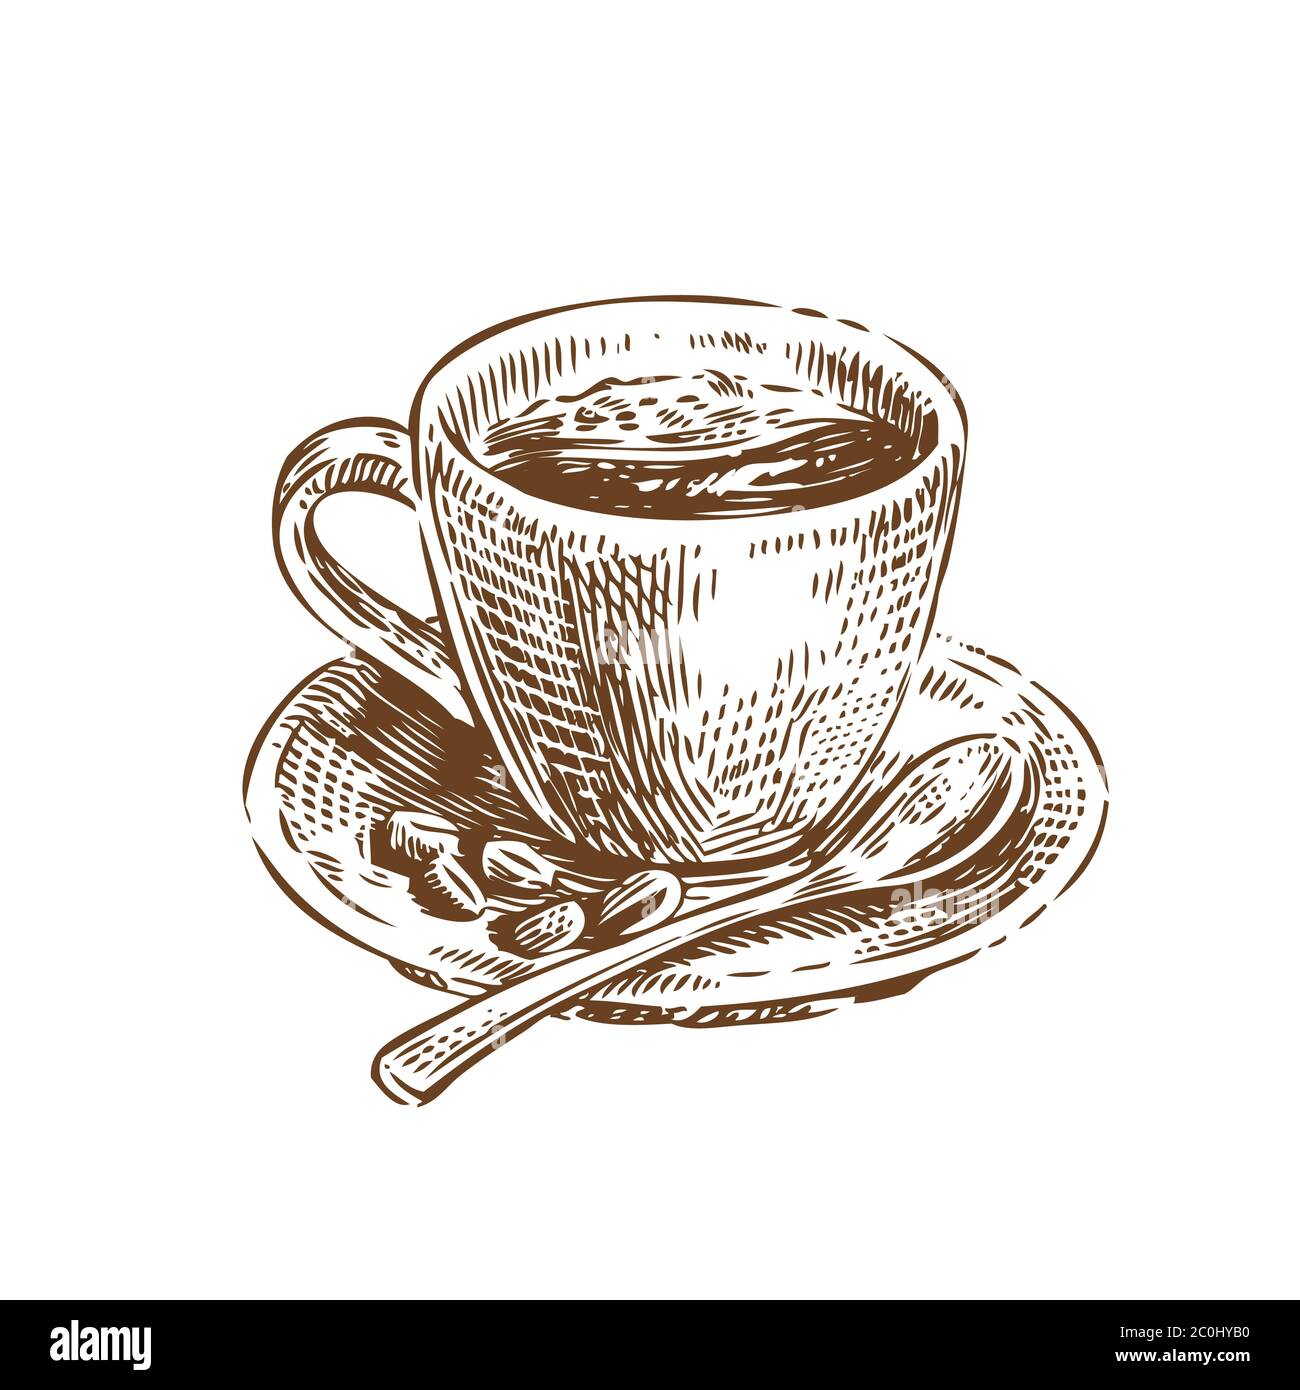 Tasse Kaffee Skizze. Vintage-Vektorgrafik. Menügestaltung für Café und Restaurant Stock Vektor